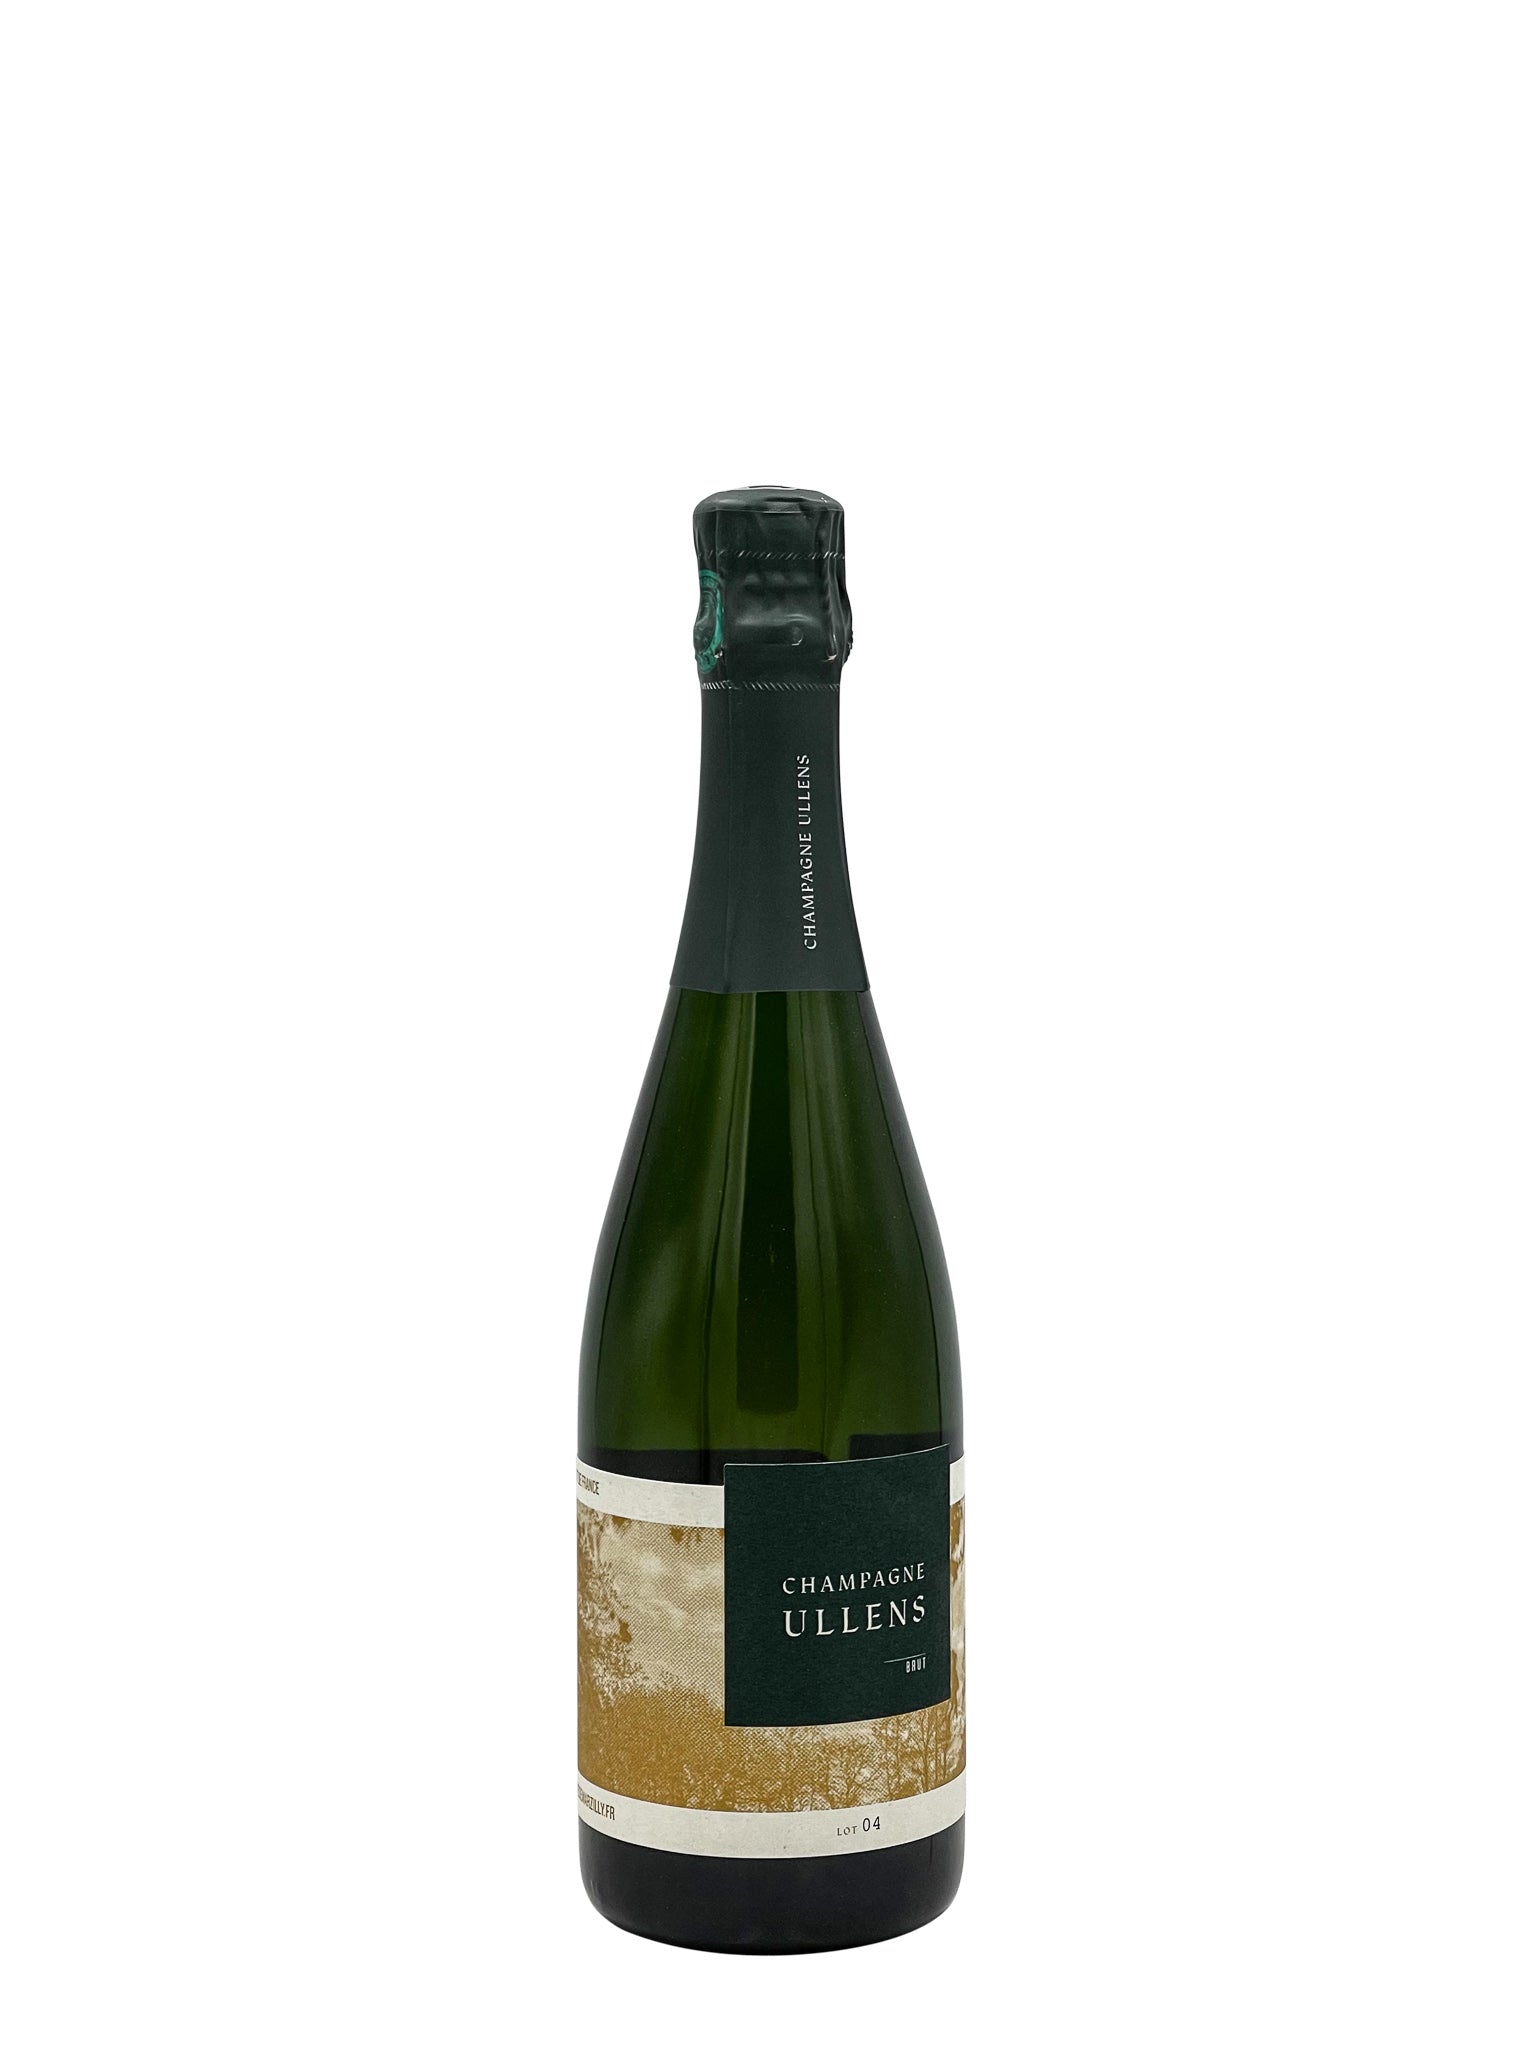 Champagne Ullens Brut  "Lot 04" NV